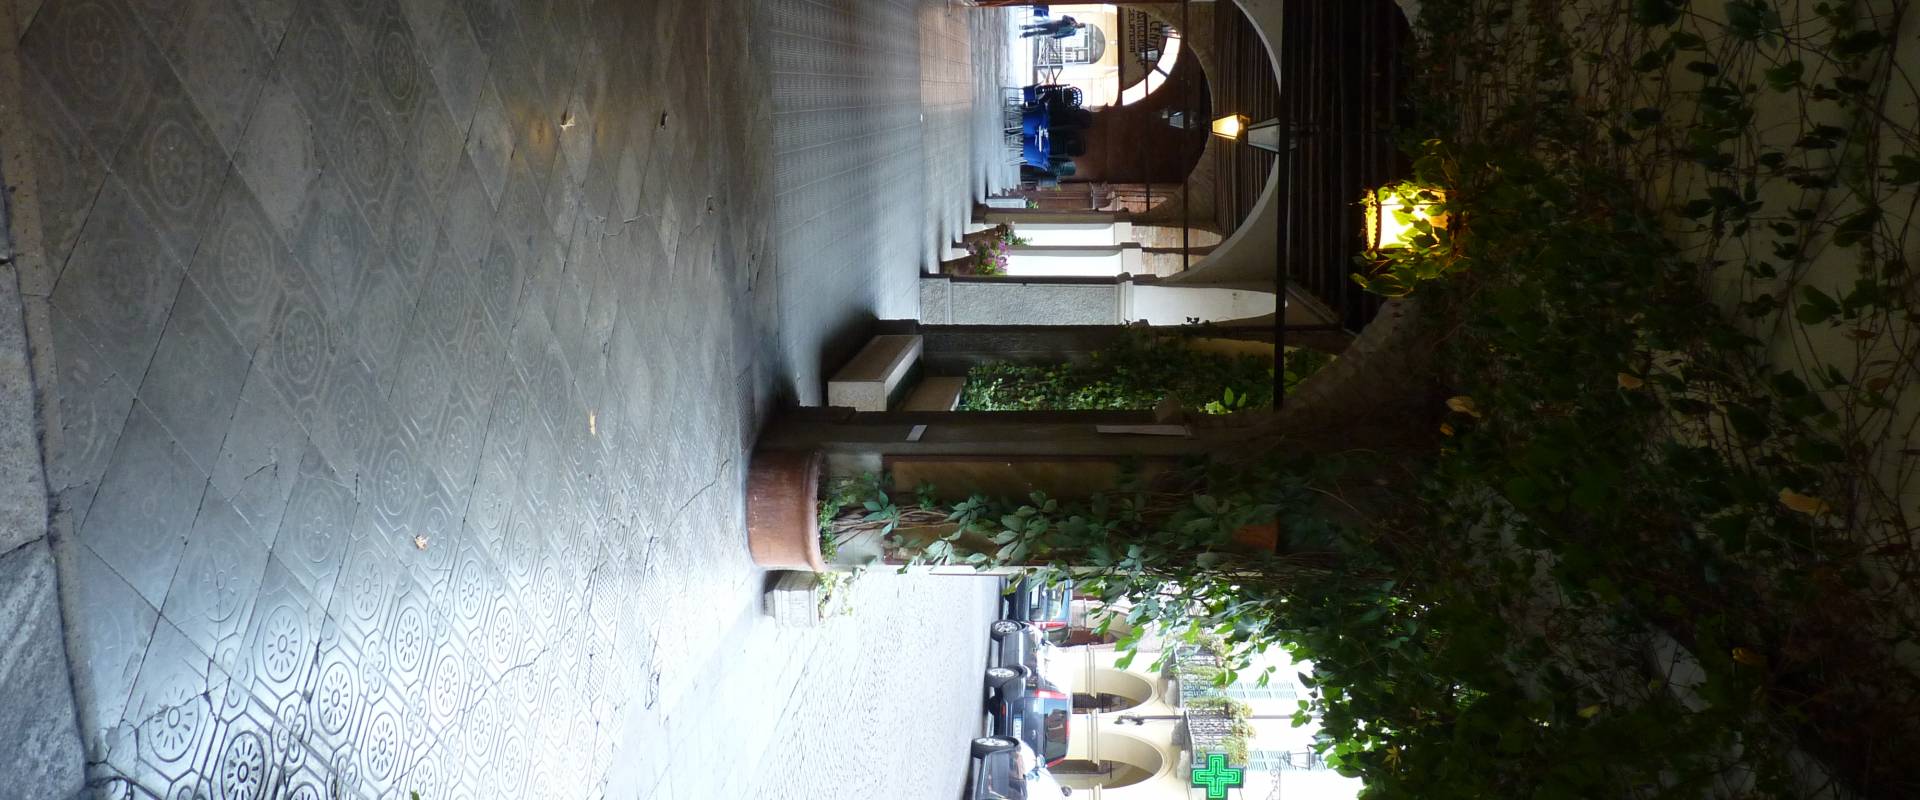 Dettaglio dei portici con rampicante su Via Roma - Busseto foto di IL MORUZ